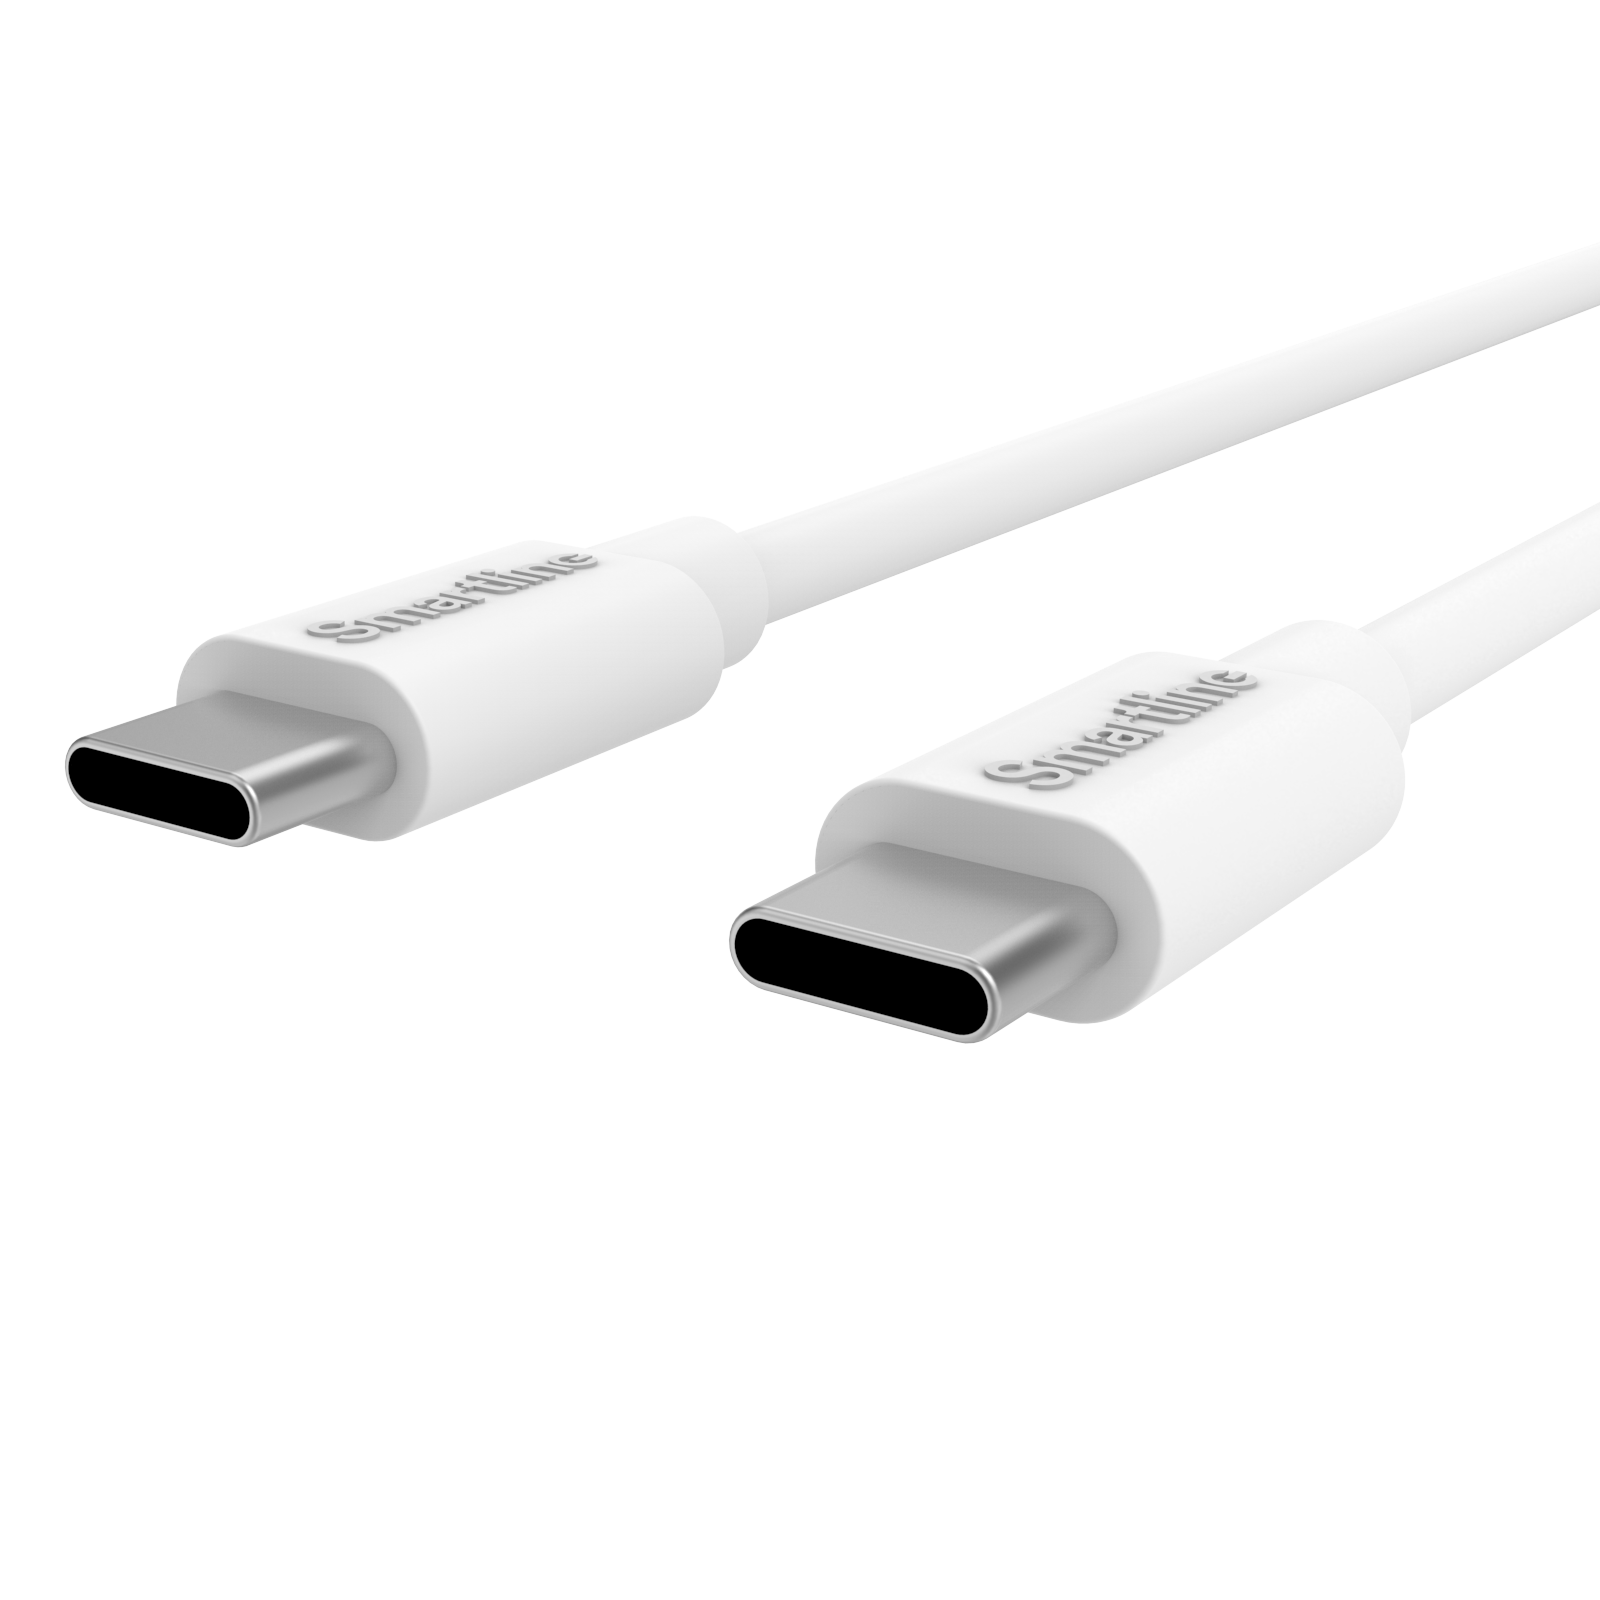 Fullstendig Billader for USB-C - 1m ledning og lader USB-C - Smartline